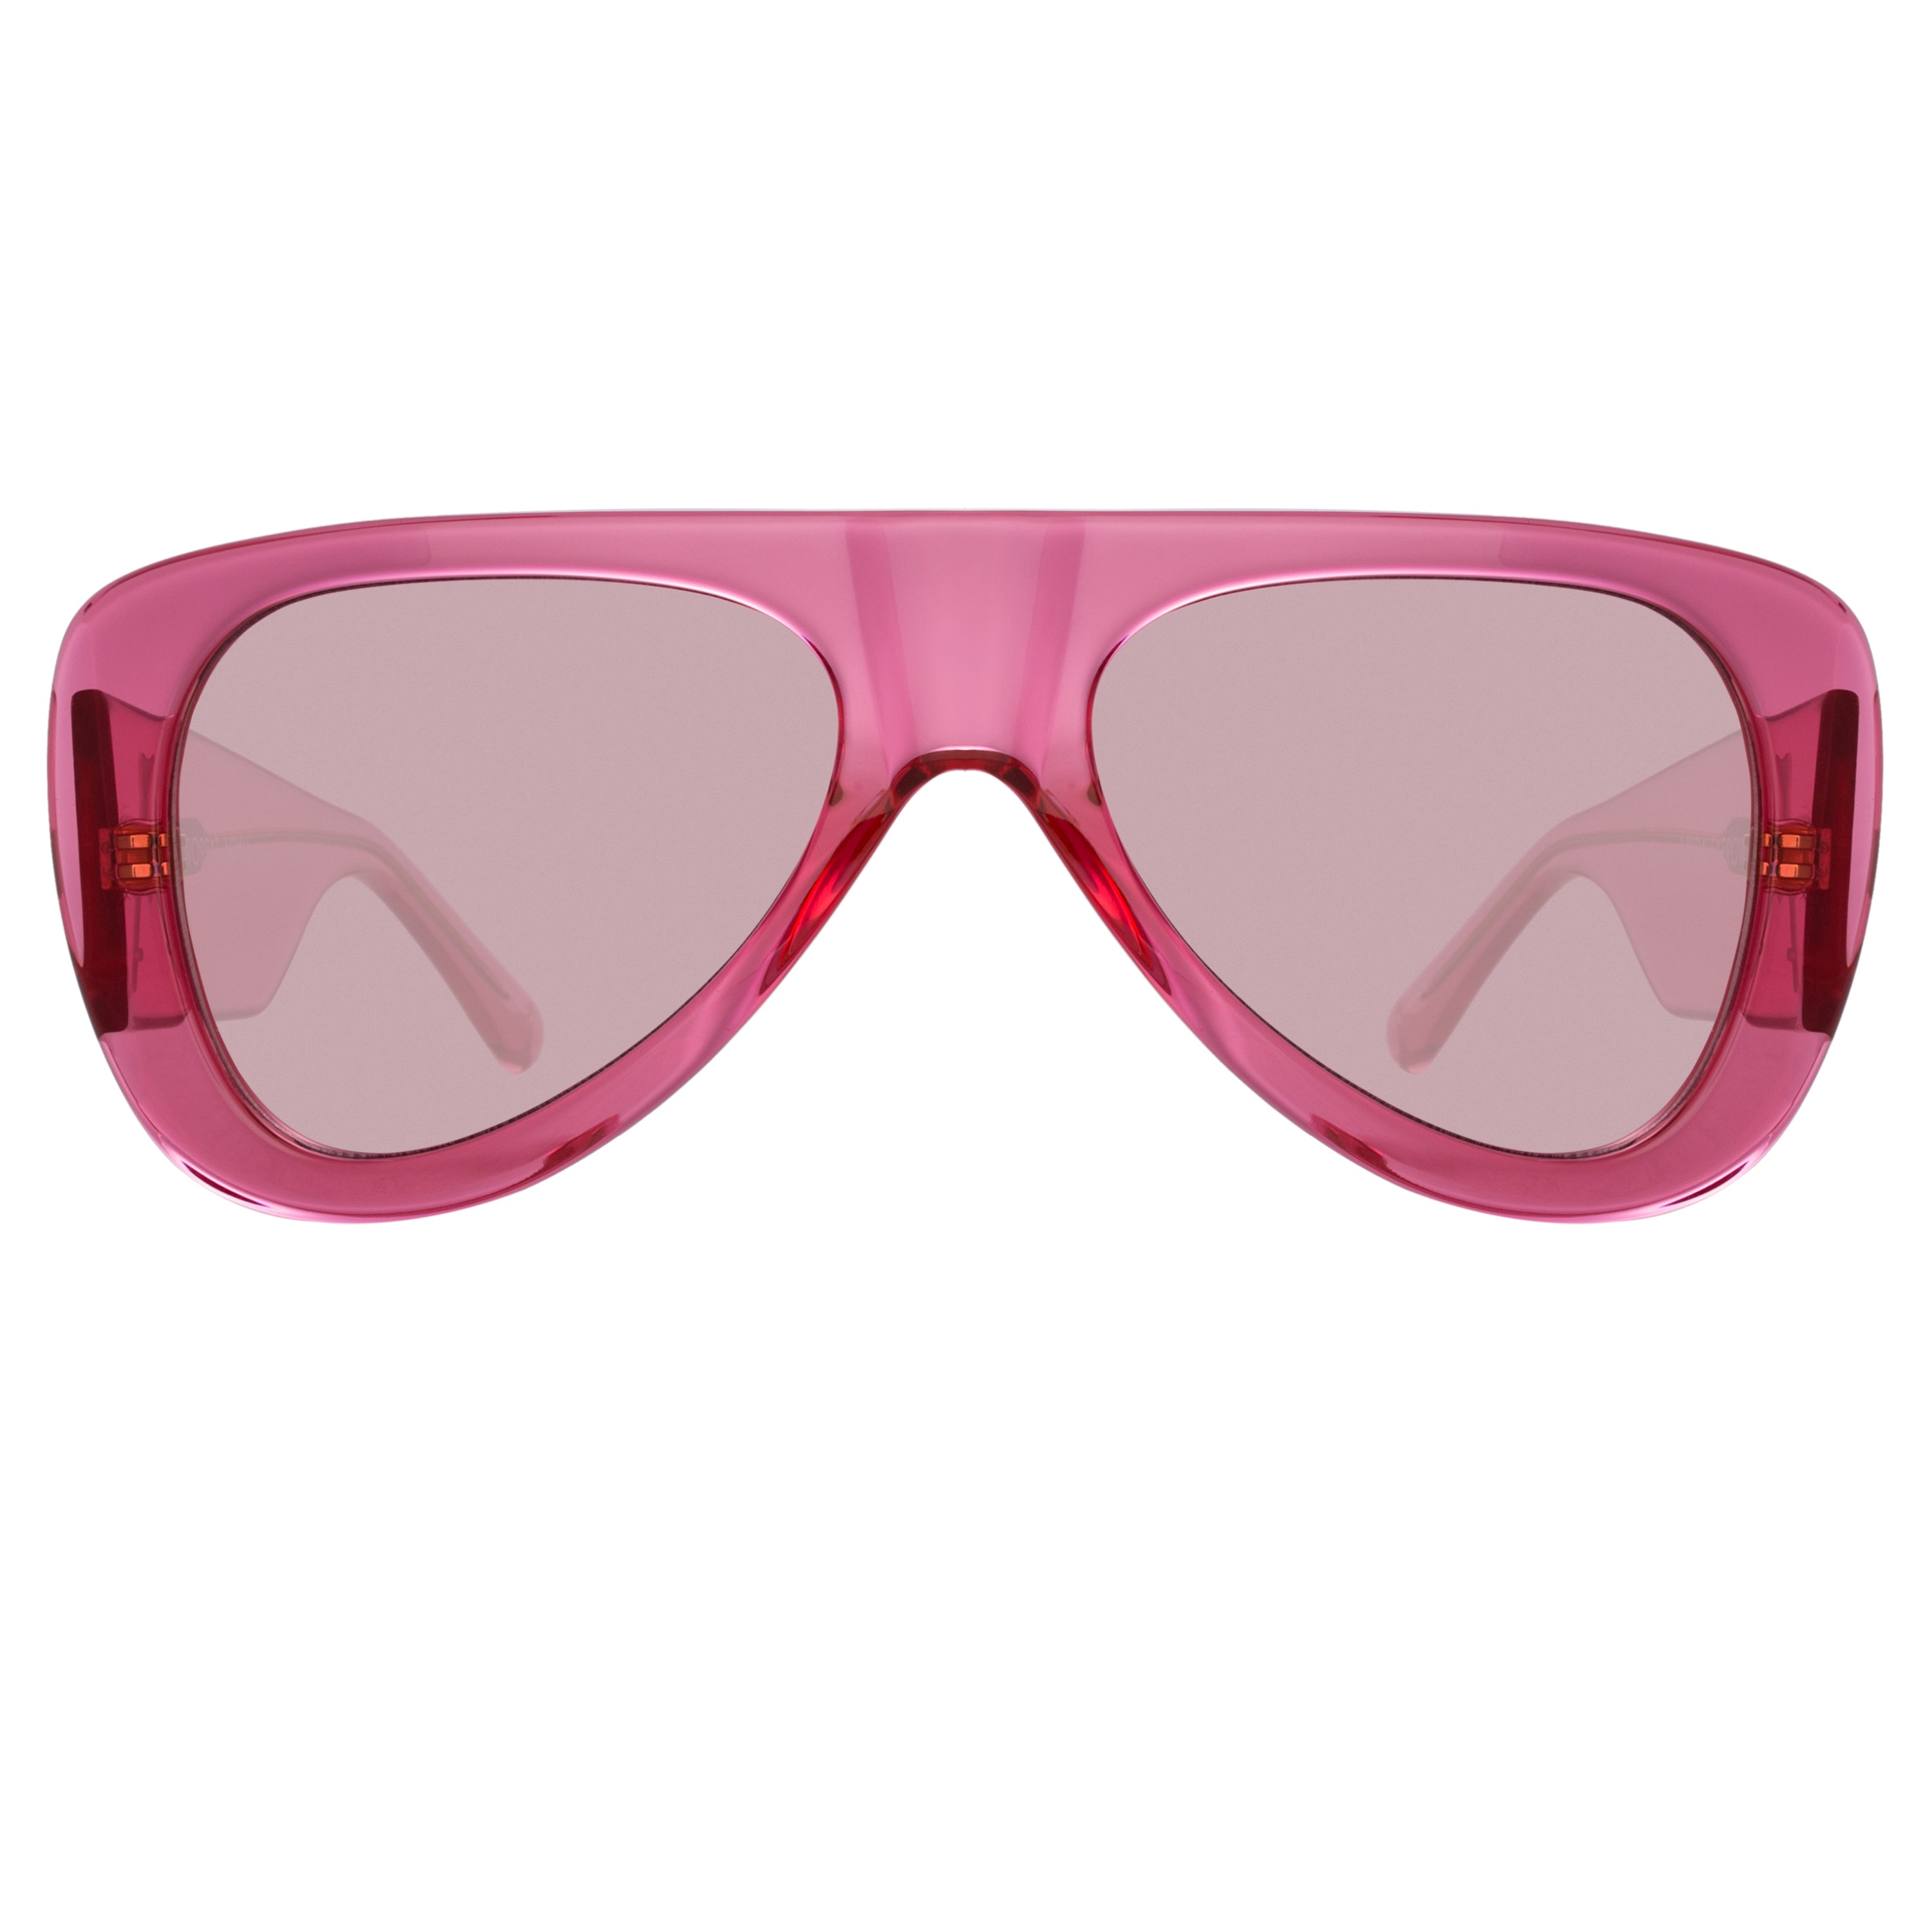 The Attico Edie Aviator Sunglasses in Strawberry